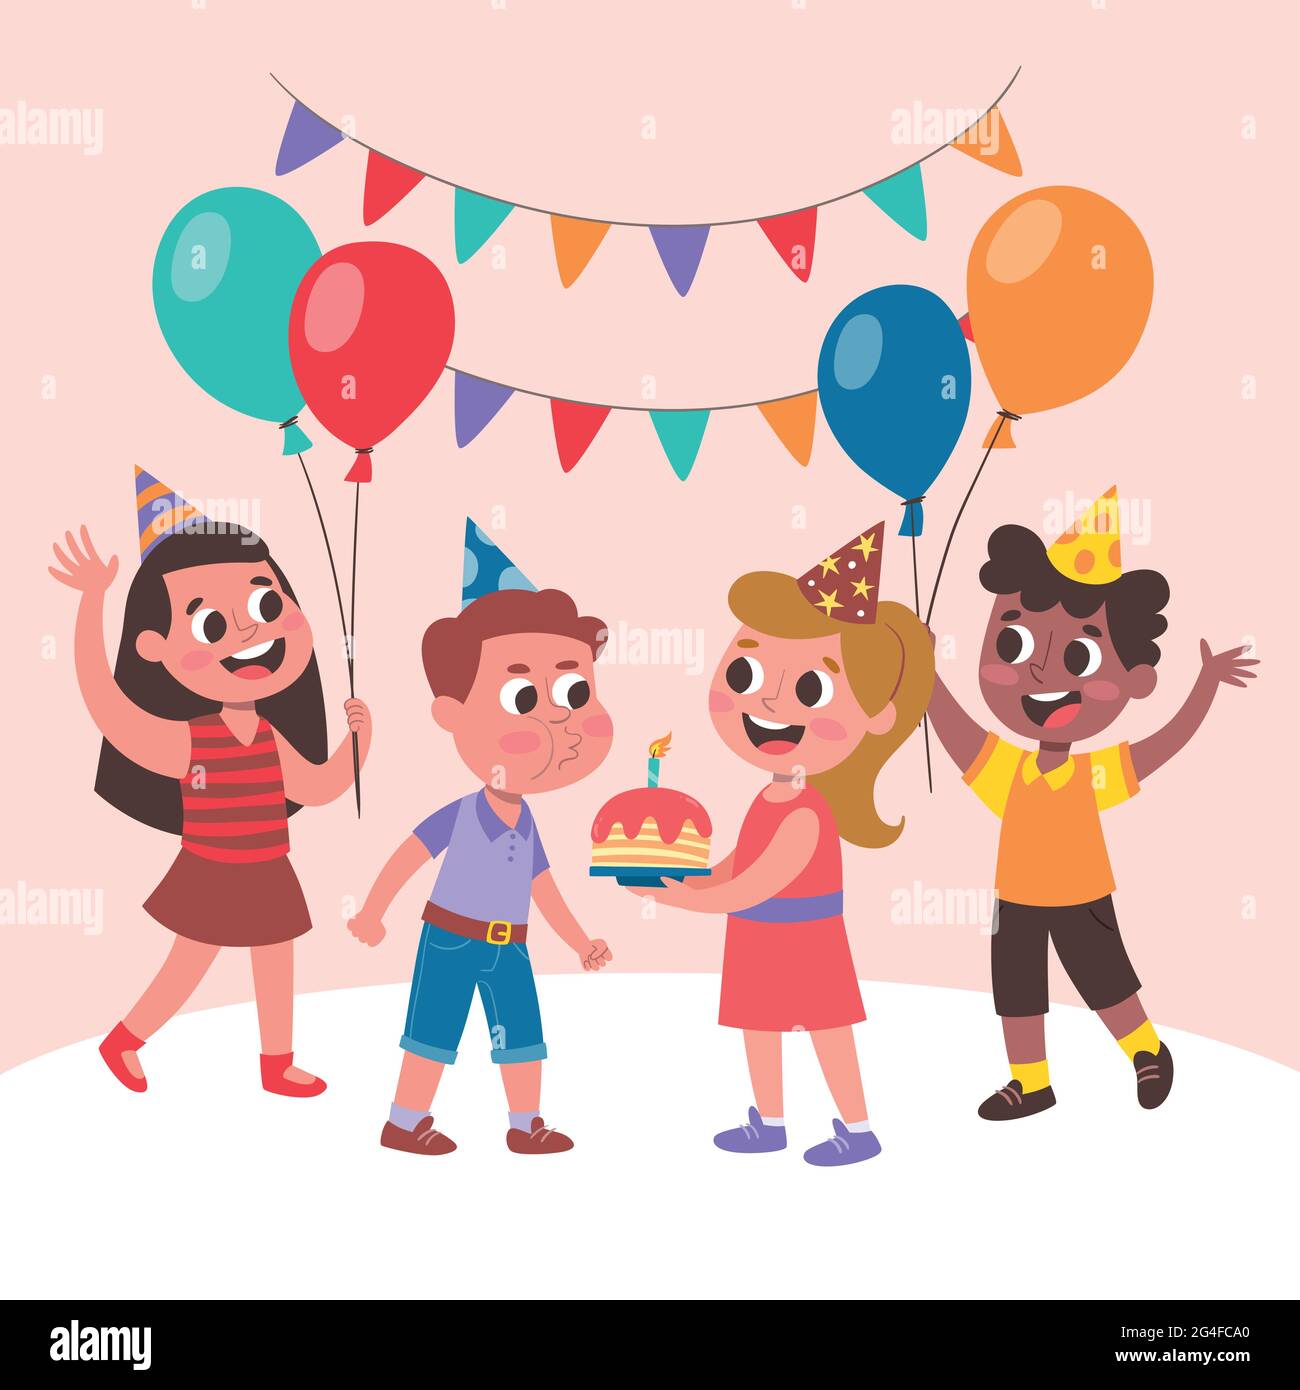 Nette Kinder feiern eine Geburtstagsfeier. Kleiner Junge bläst die Kerzen aus. Glückliche Kinder mit Ballons springen und feiern. Stock Vektor